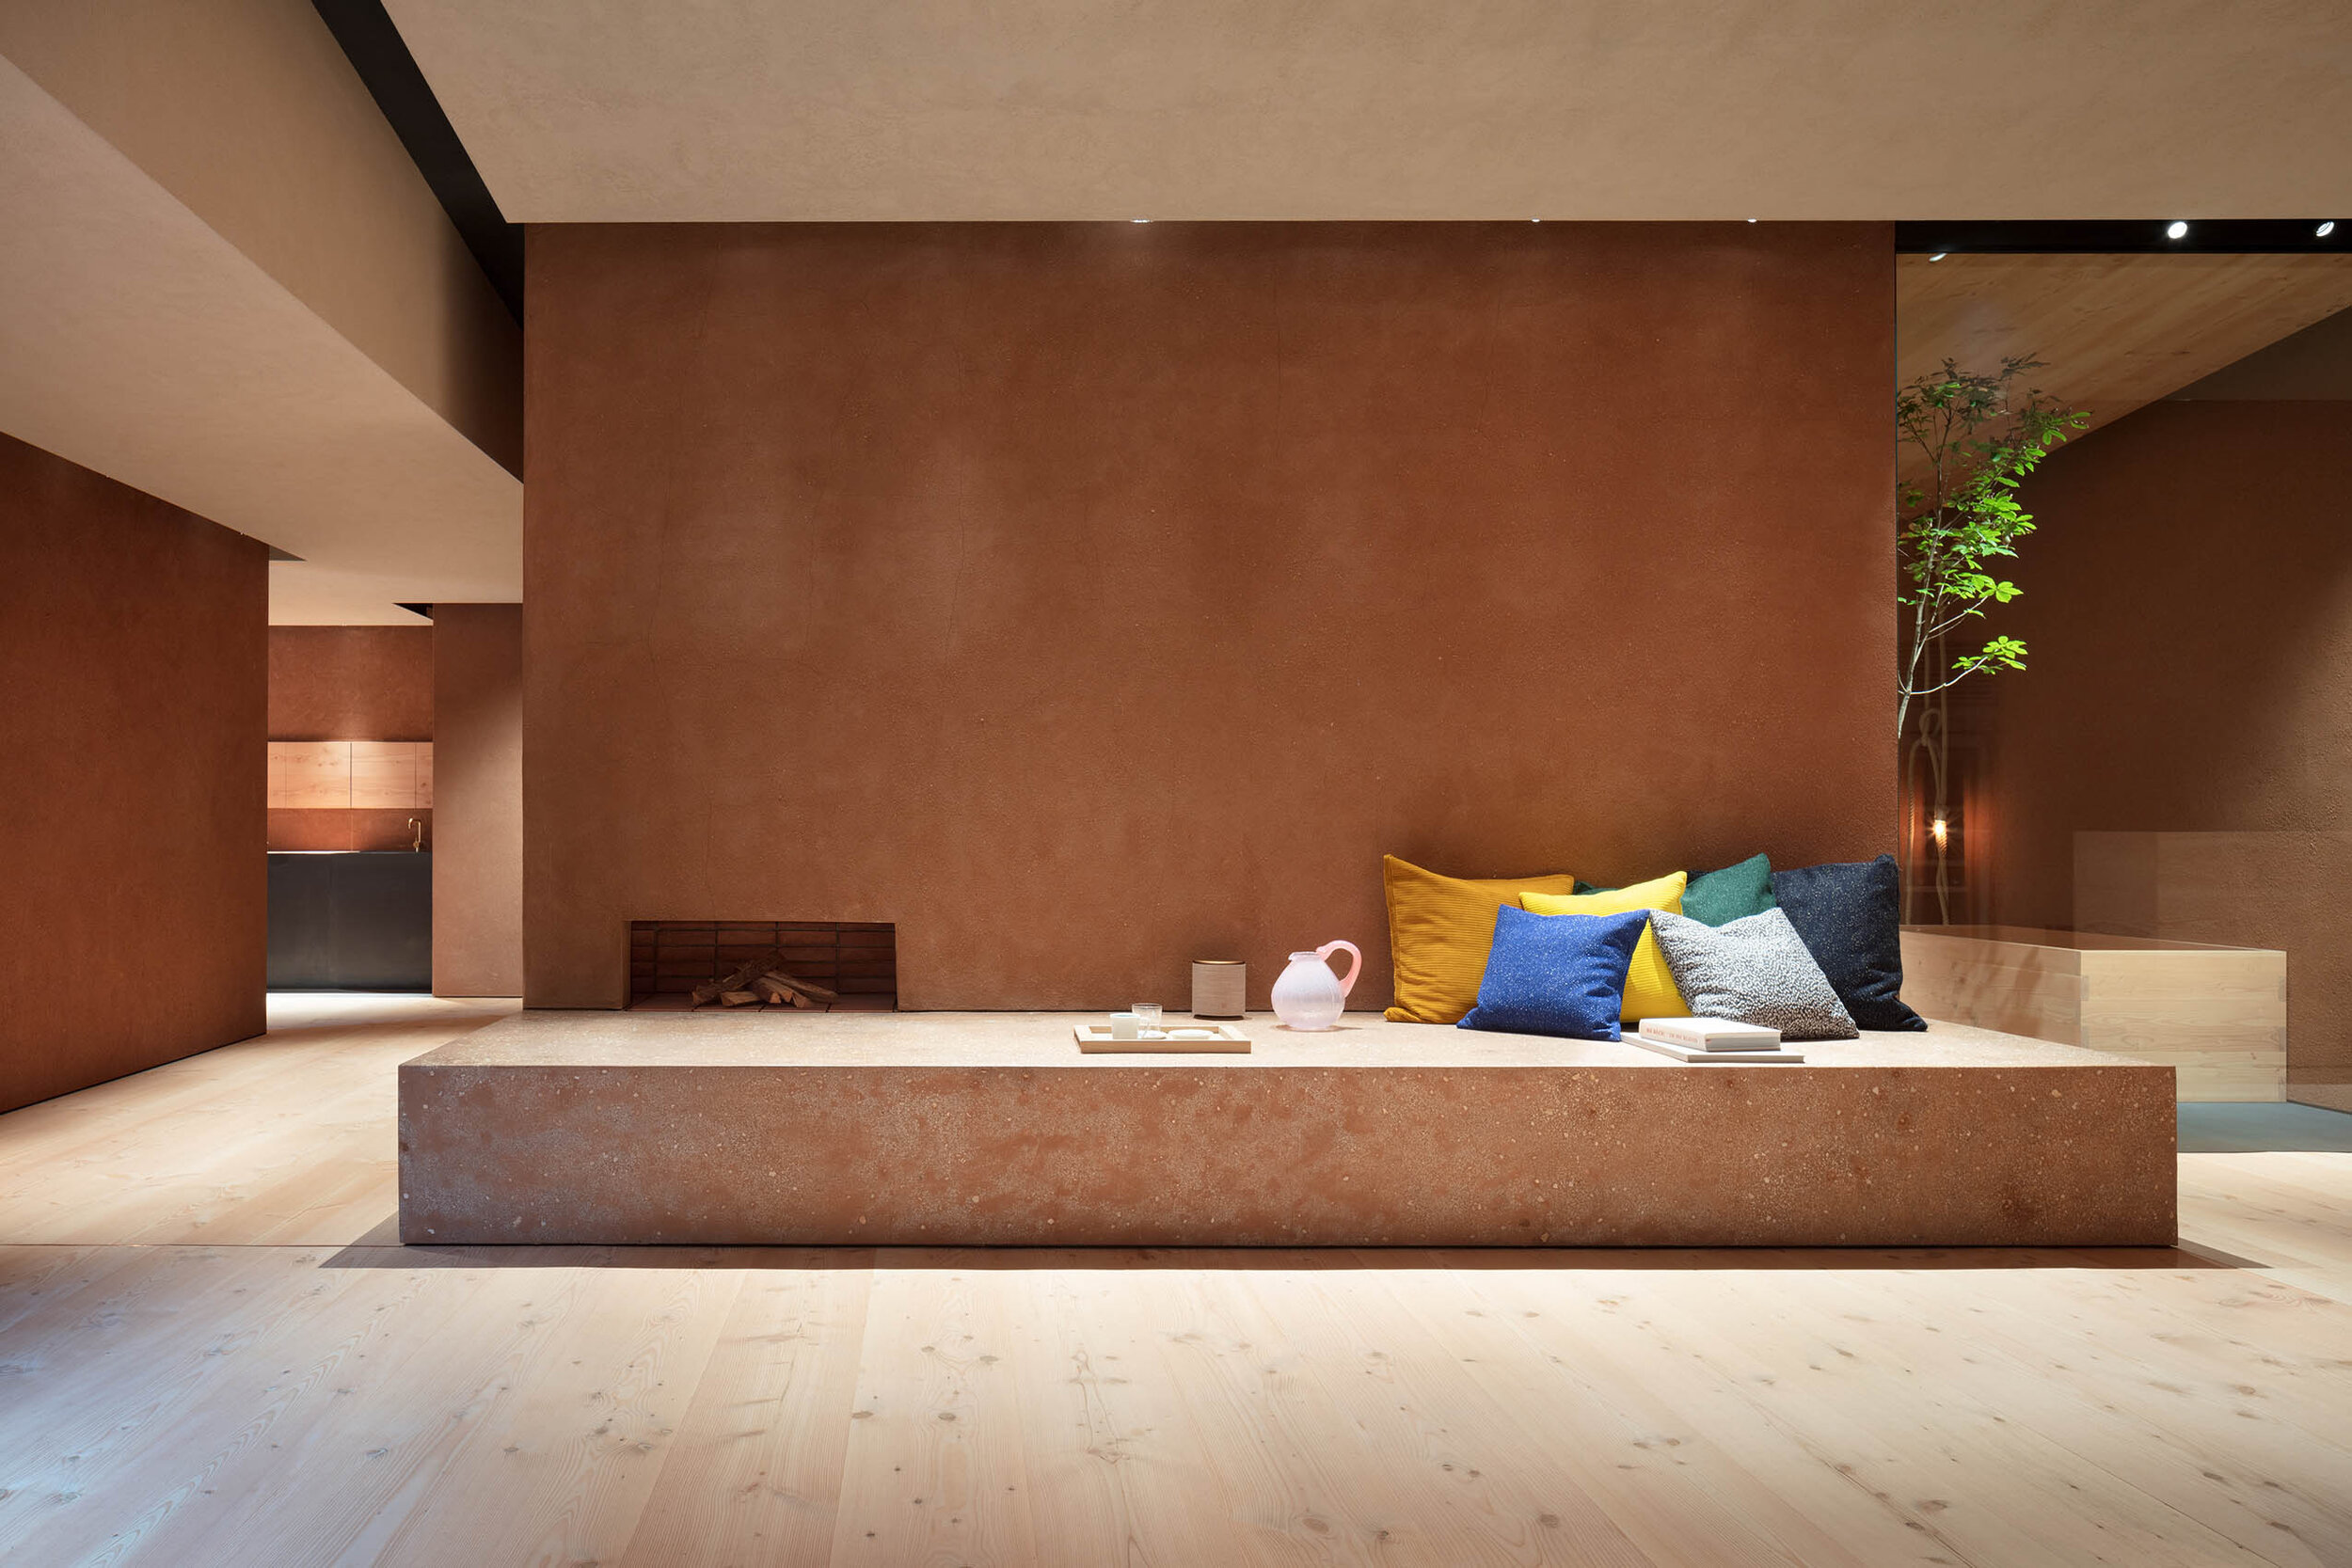  Teruhiro Yanagihara Studio has designed   living room-like space for 1616/arita japan showroom in Arita, Japan. 